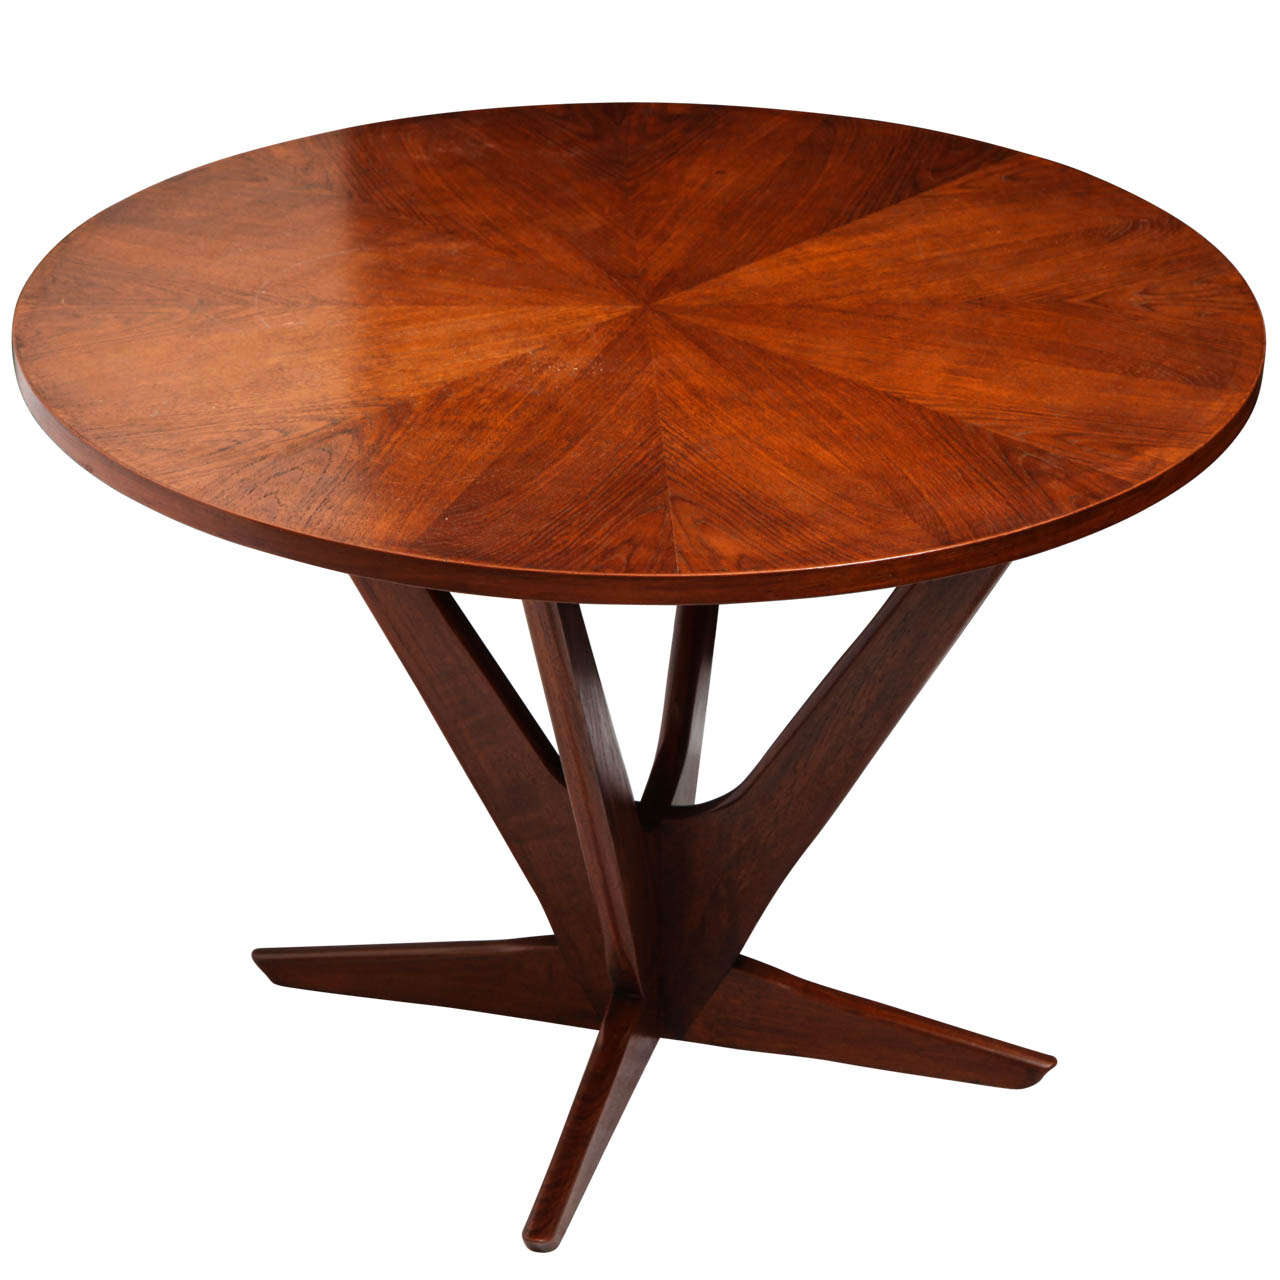 A 1960's Modernist teak Table signed Georg Jensen for Kubus